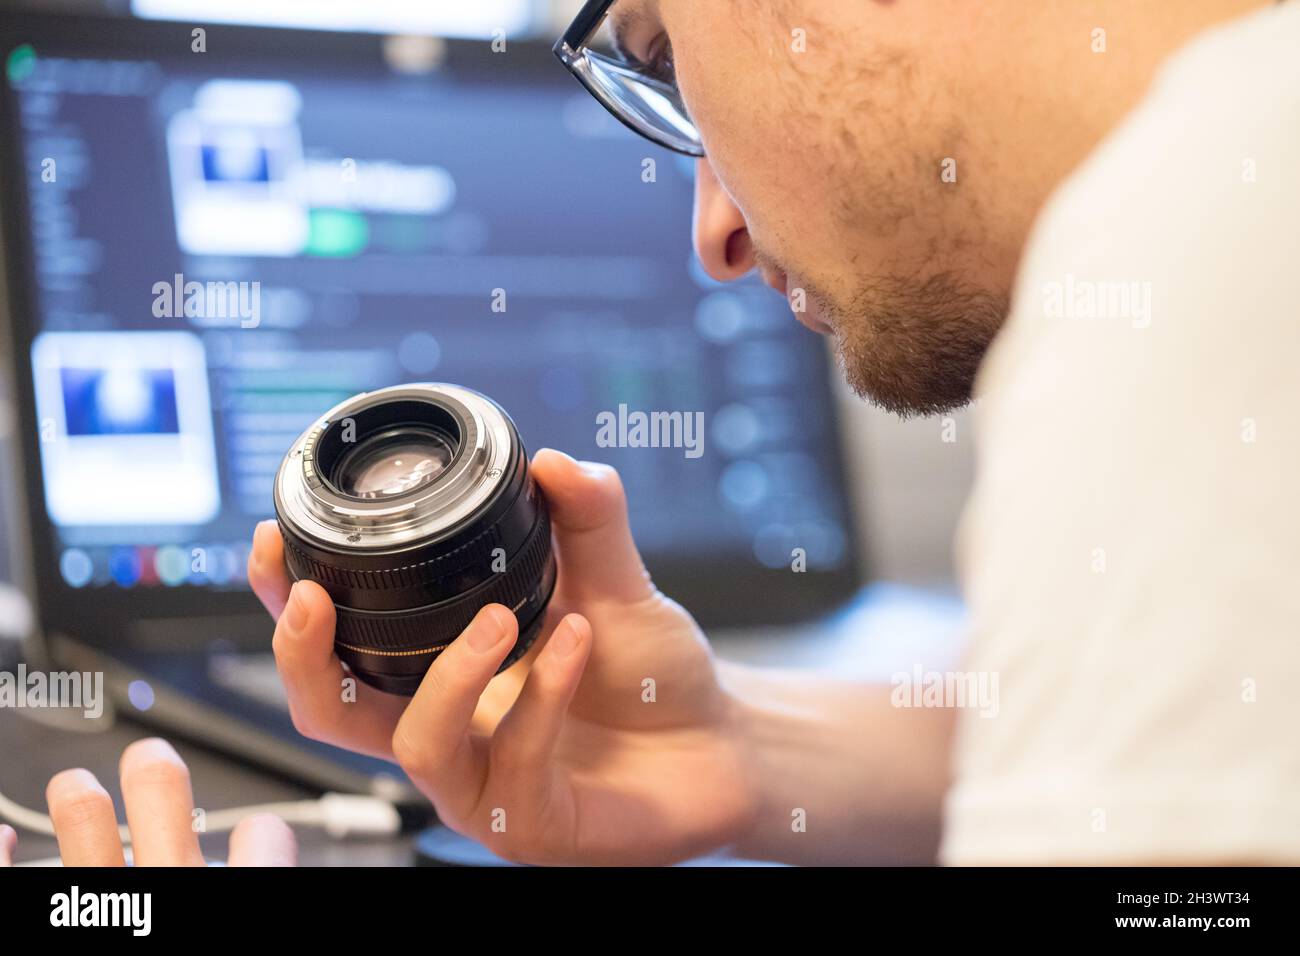 Der männliche Fotograf hat ein Objektiv in der Hand und schaut darauf. Laptop im unscharfen Hintergrund. Stockfoto